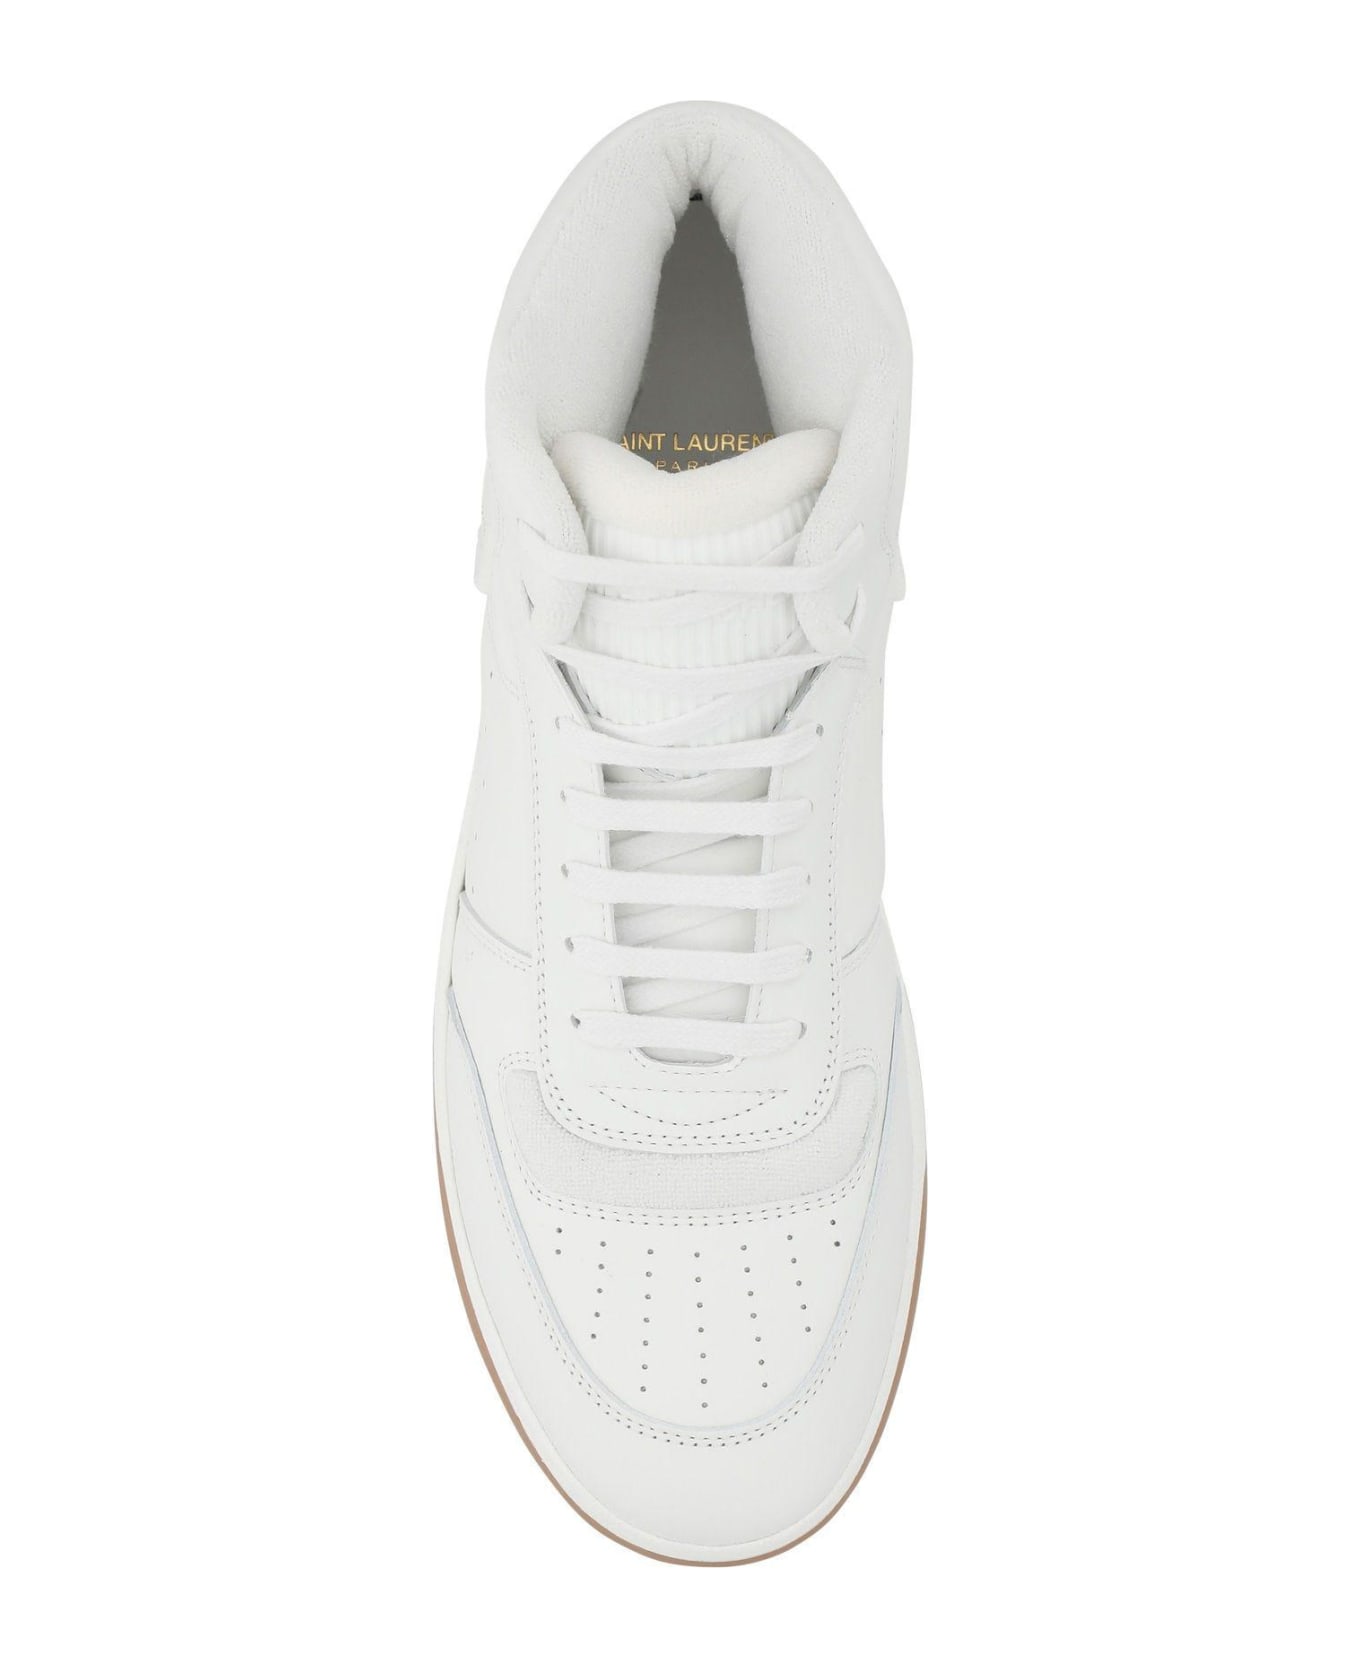 Saint Laurent Sl/80 Sneakers - White スニーカー